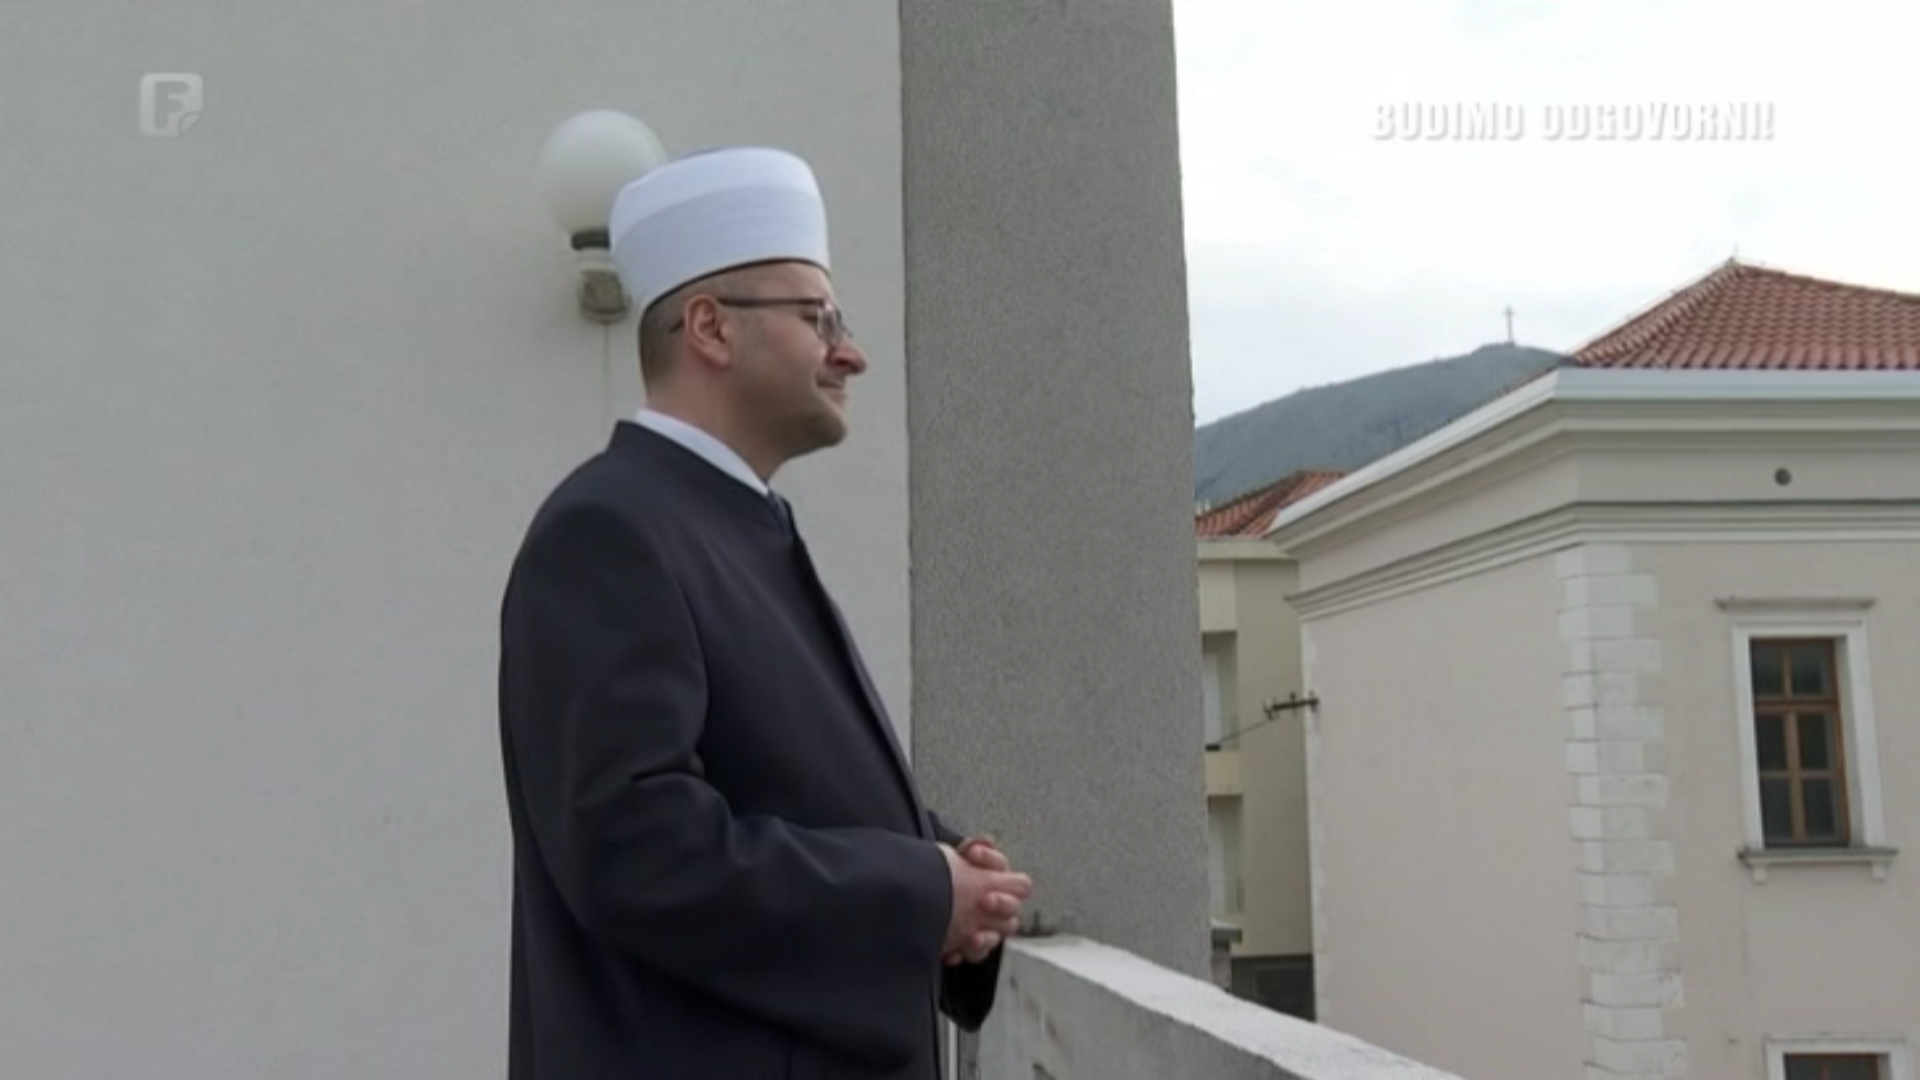 Video: Mozaik religija, intervju muftije mostarskog mr. Salem ef. Dedovića